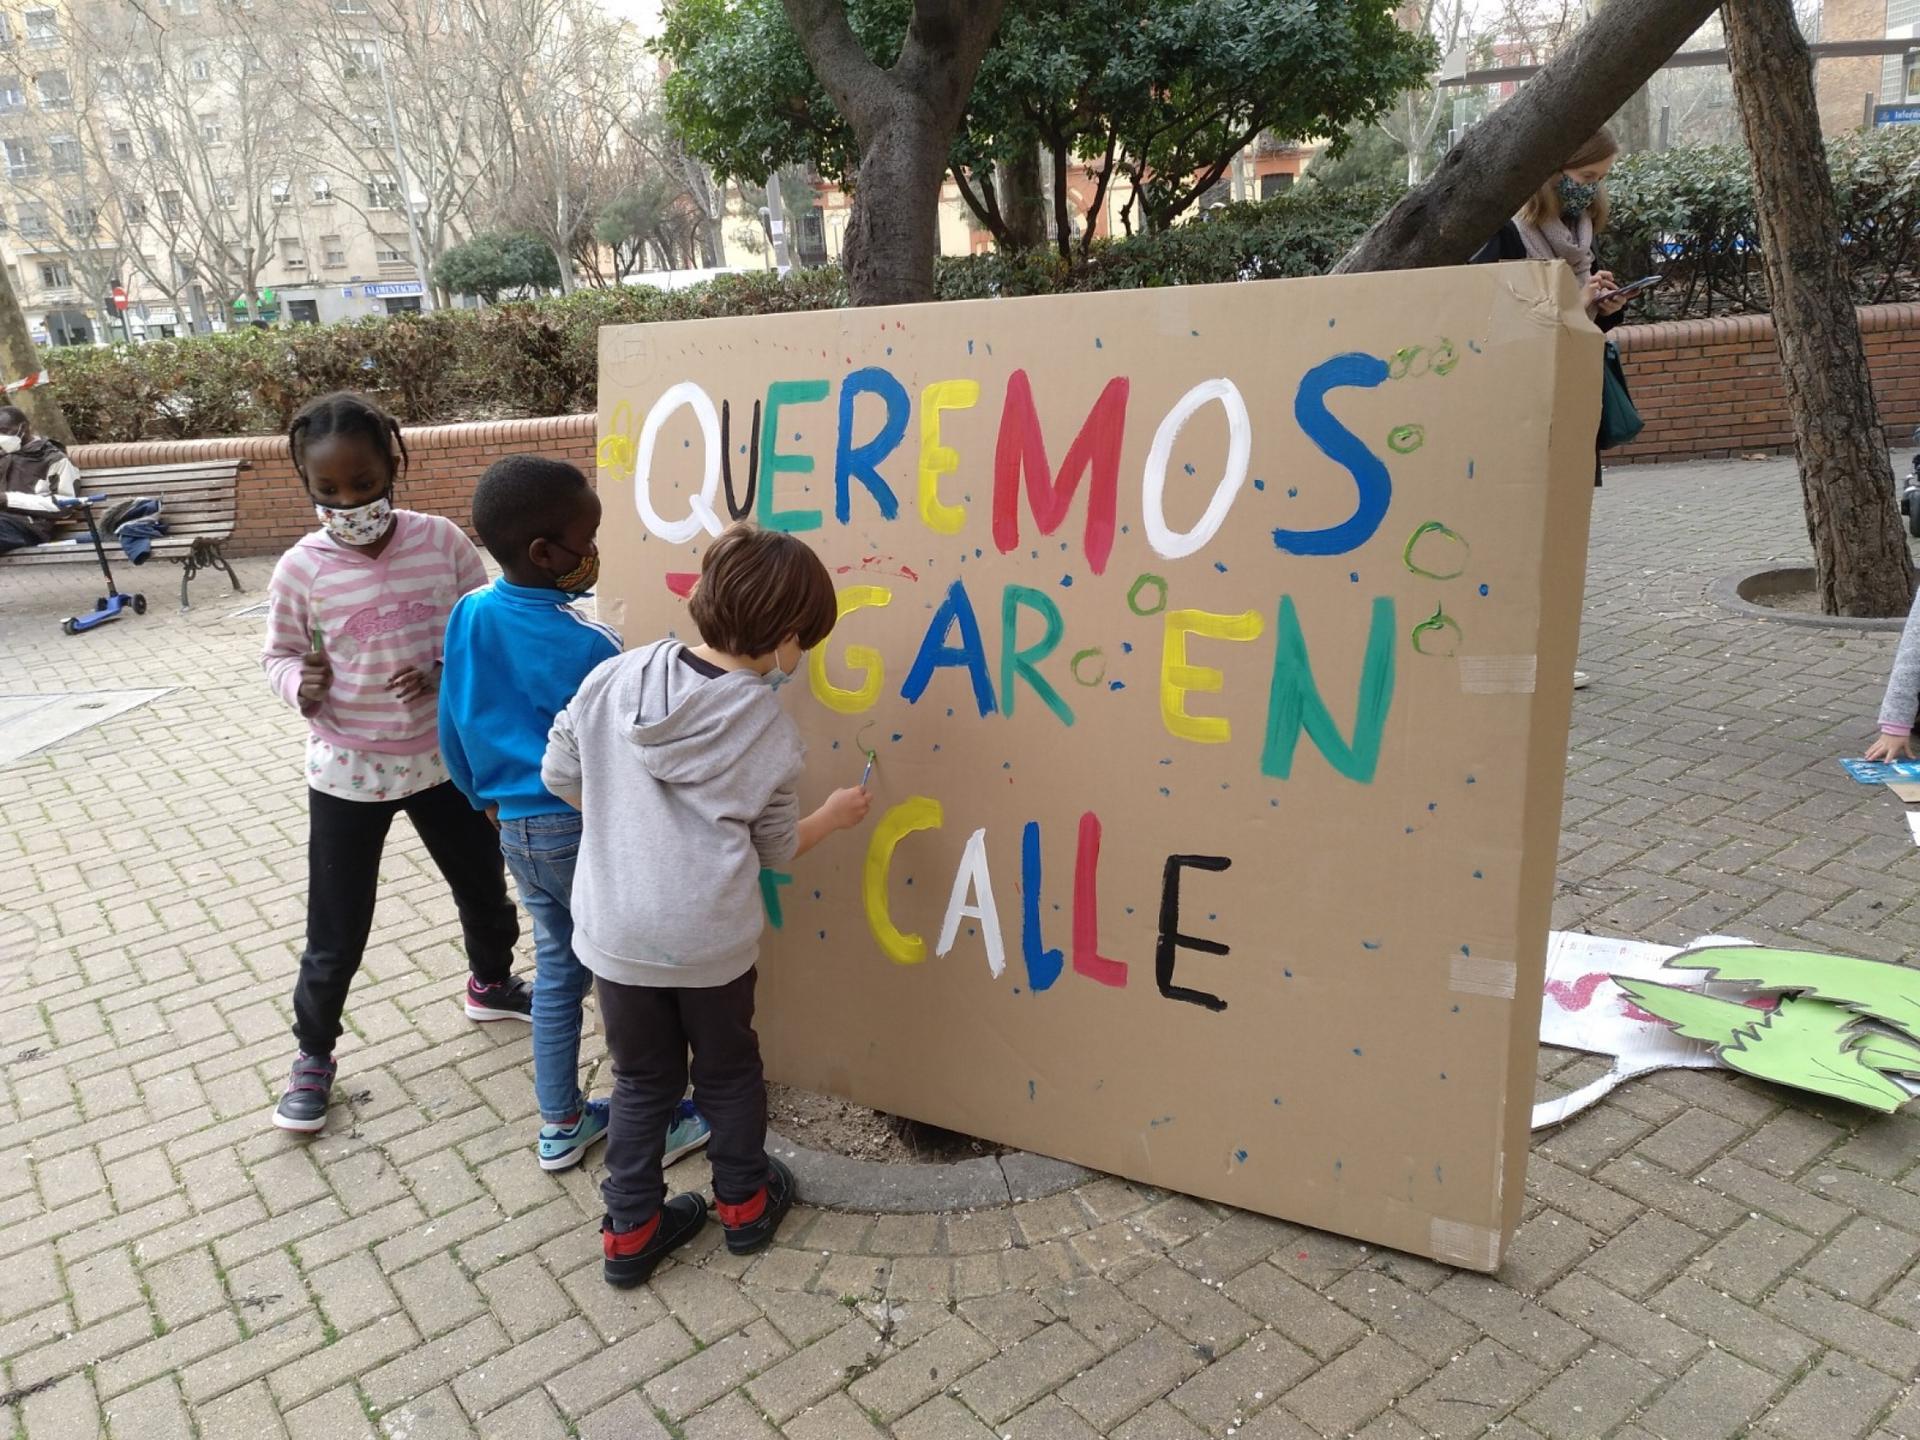 Children gather around an anti-car sign